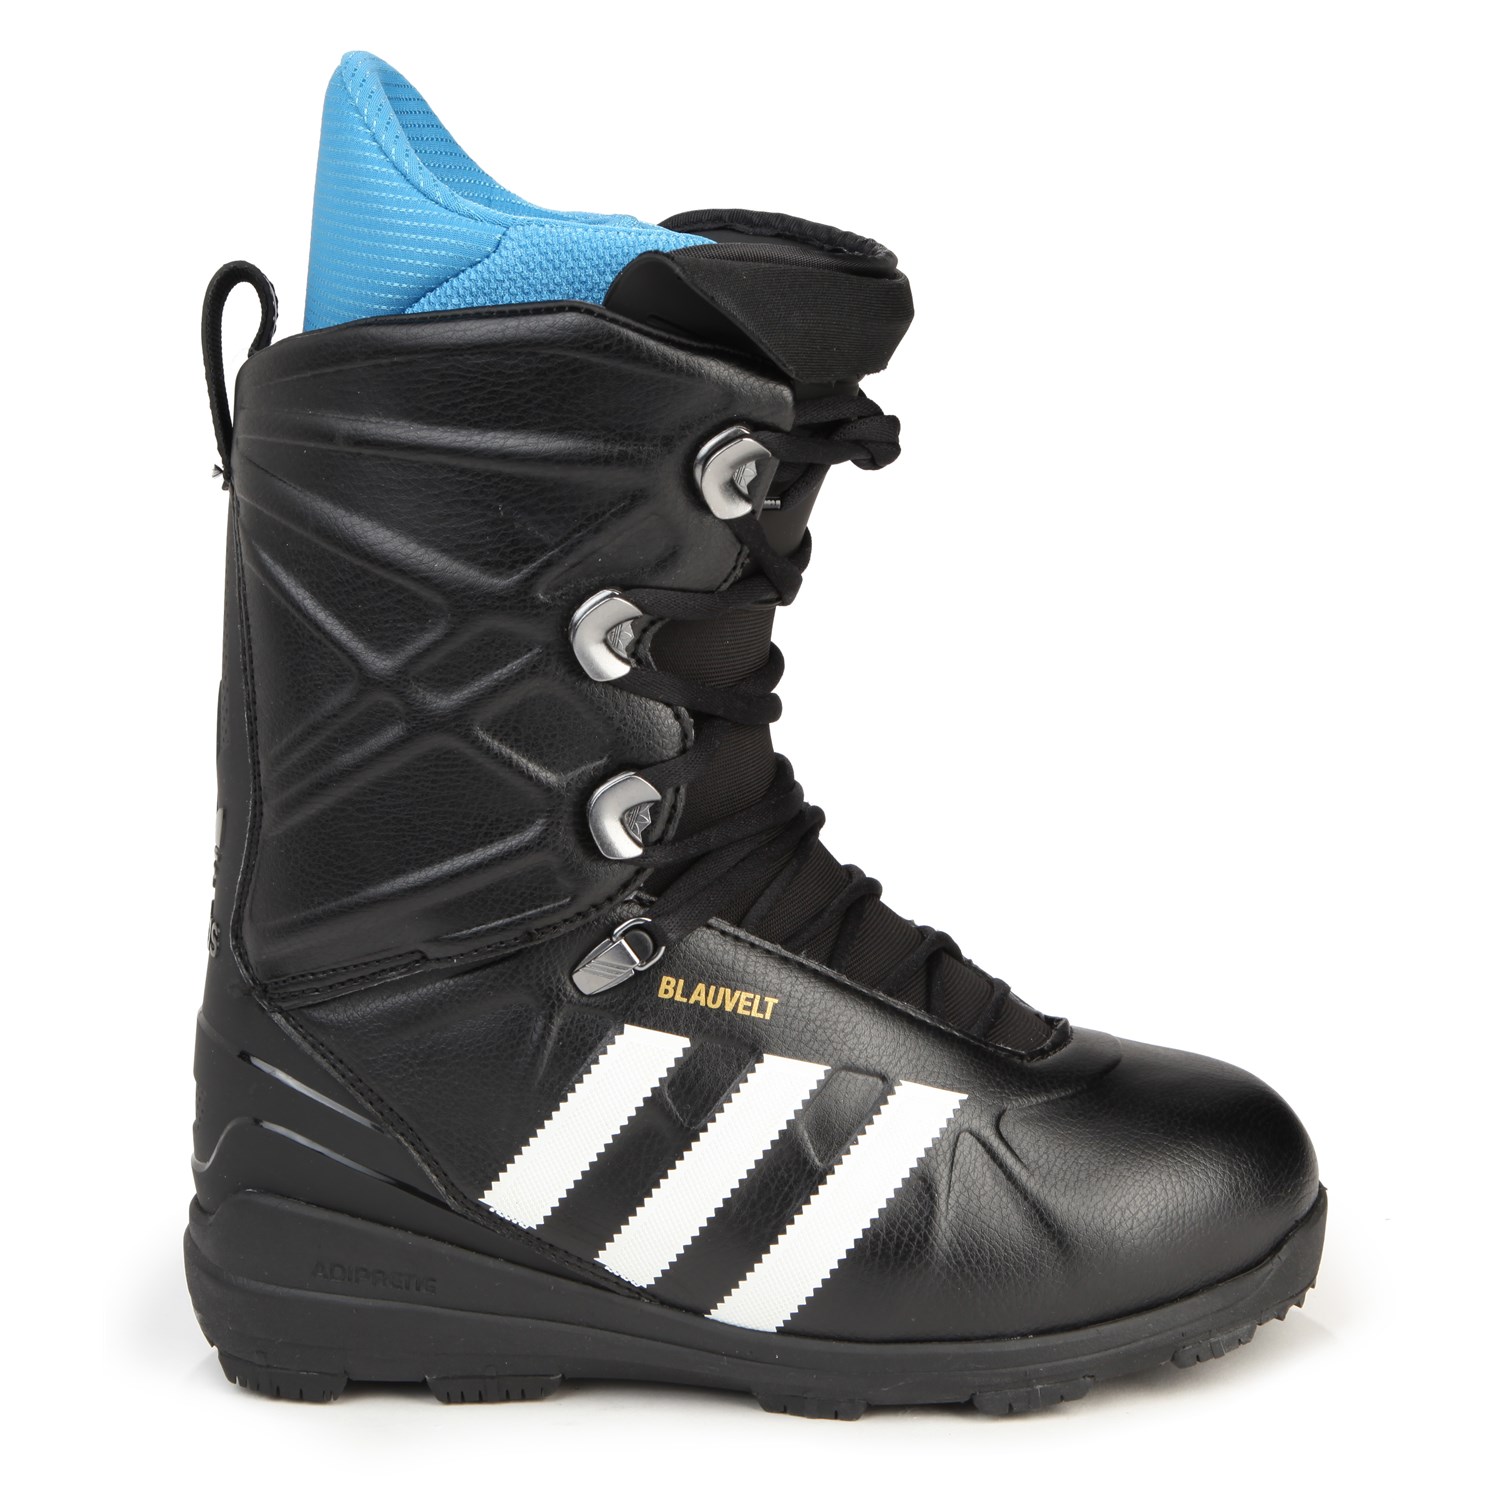 Psicologicamente resultado garaje Adidas Blauvelt Snowboard Boots 2014 | evo